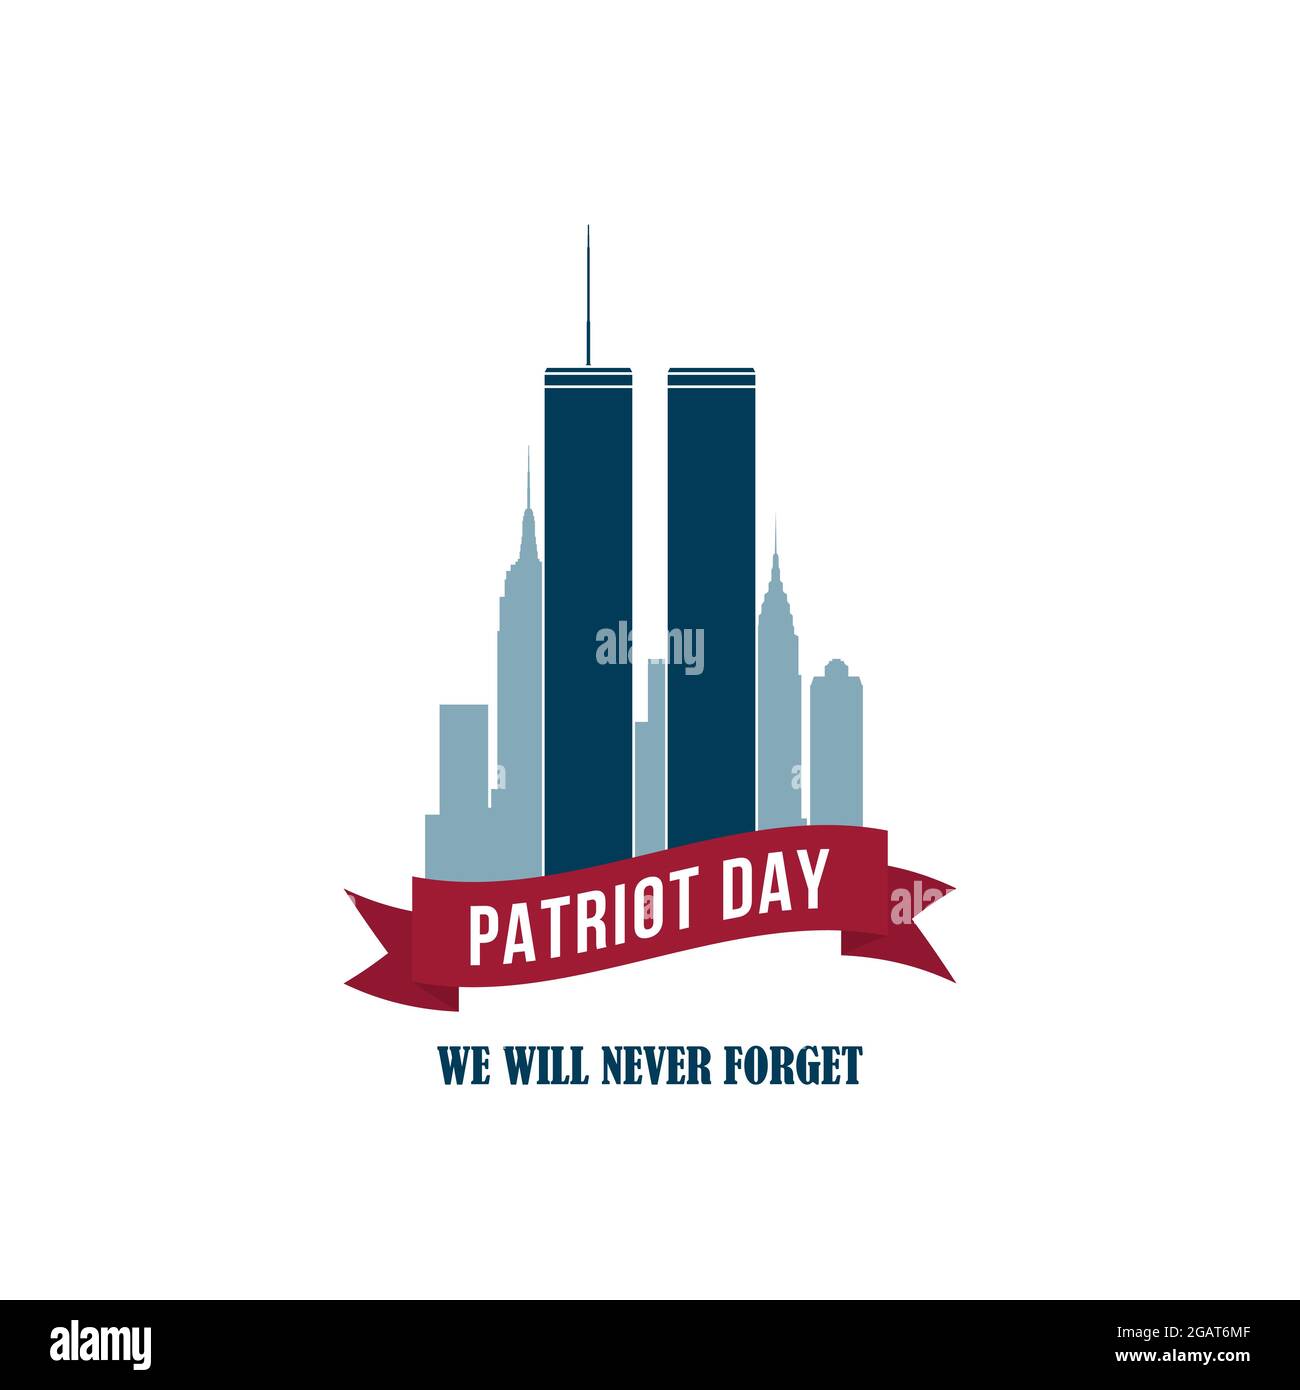 9/11 Patriot Day Karte mit Twin Towers. USA Patriot Day Banner. 11. September 2001. World Trade Center. Wir werden Sie nie vergessen. Vektor-Design-Vorlage Stock Vektor